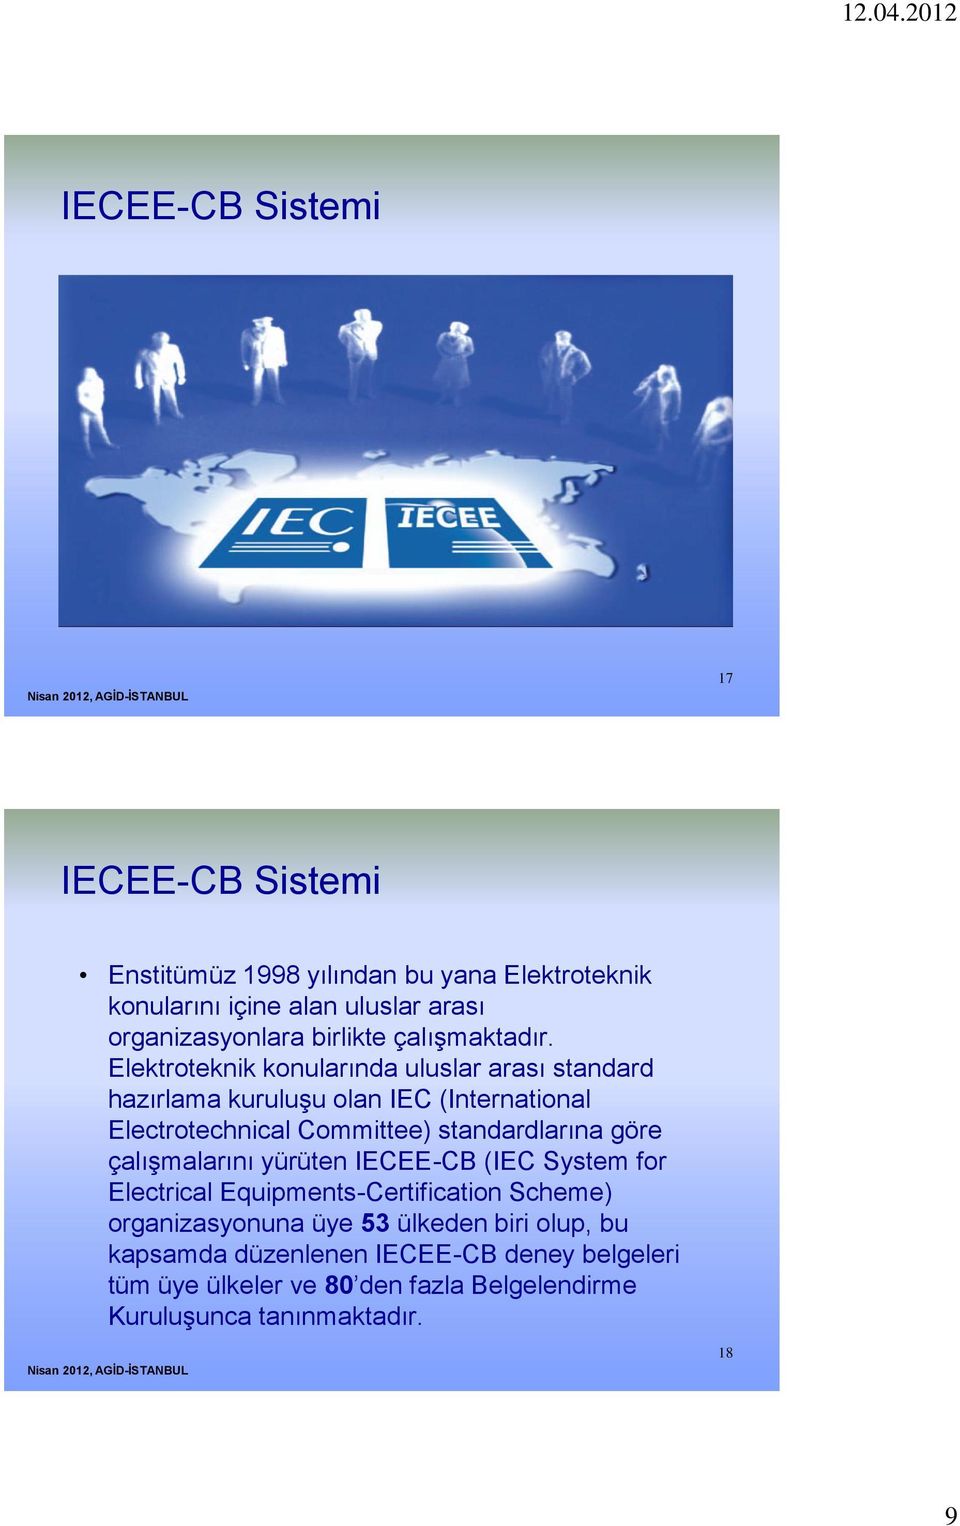 Elektroteknik konularında uluslar arası standard hazırlama kuruluşu olan IEC (International Electrotechnical Committee) standardlarına göre